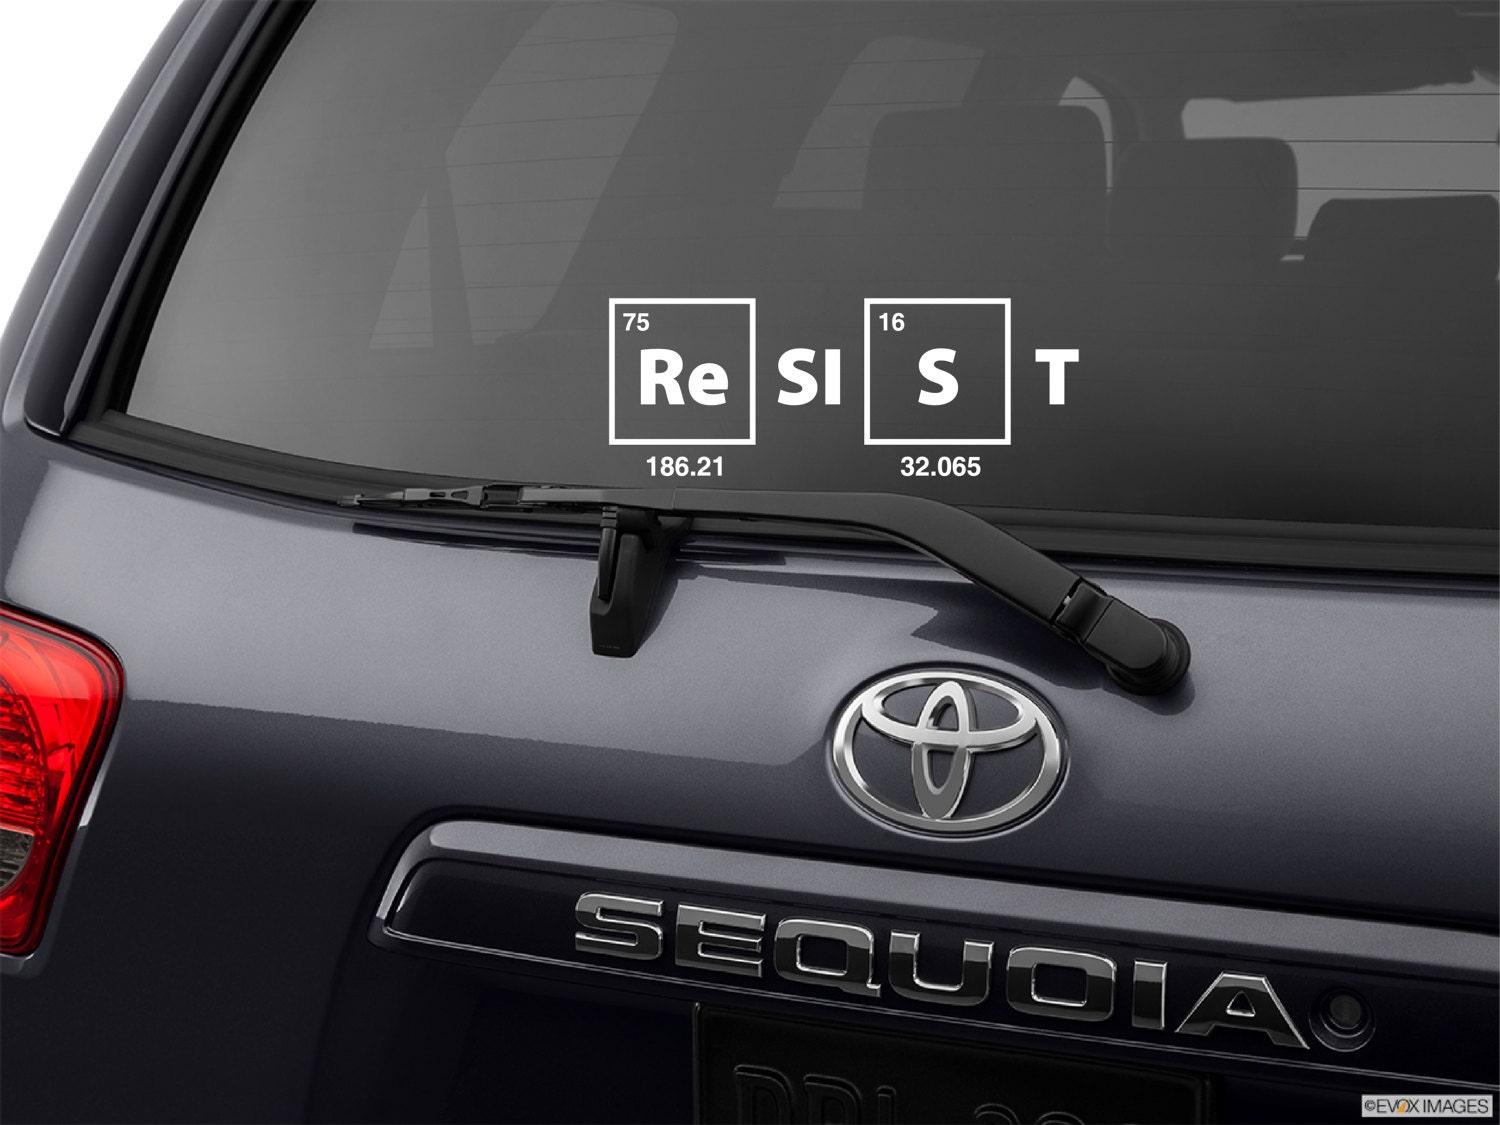 Resist Decal Resist Car Decal Resist Sticker Science Decal